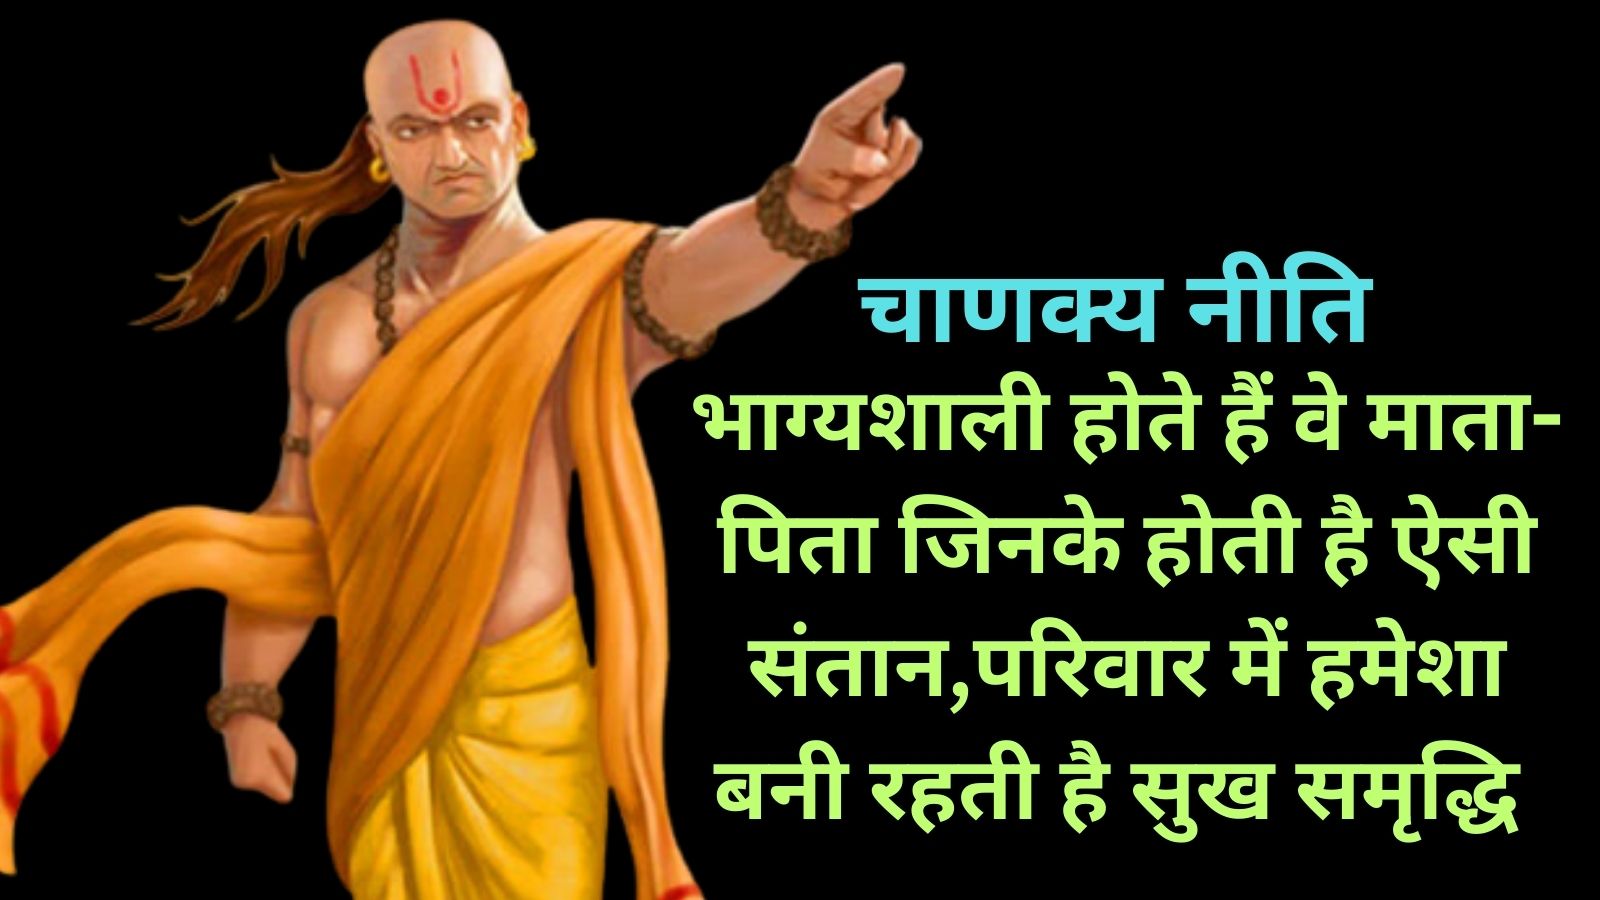 Chanakya Niti:भाग्यशाली होते हैं वे माता-पिता जिनके होती है ऐसी संतान,परिवार में हमेशा बनी रहती है सुख समृद्धि